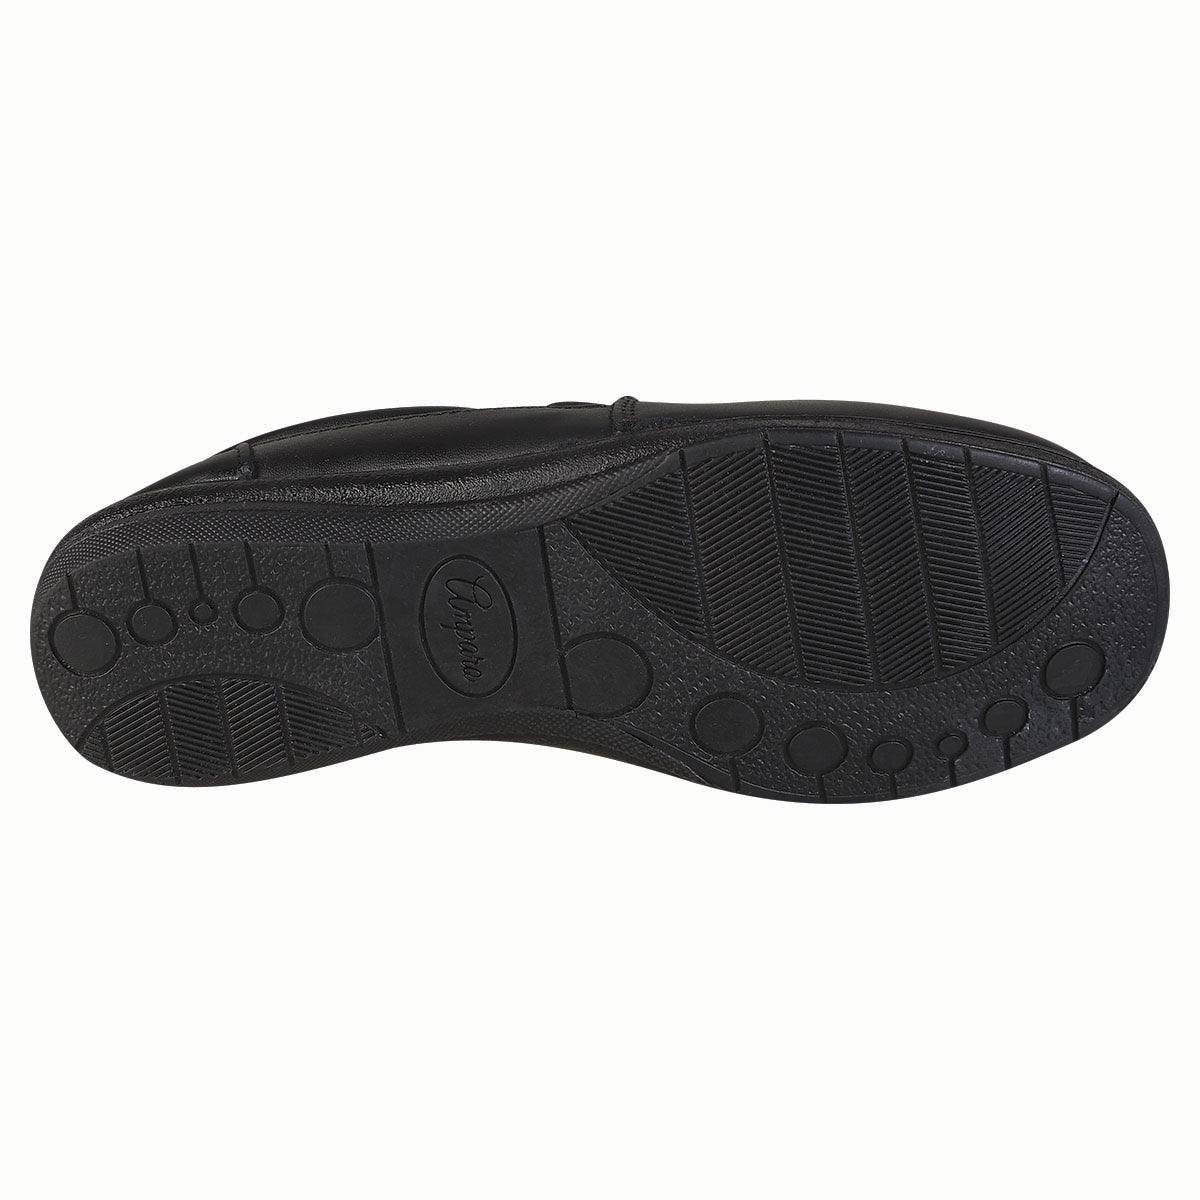 Zapato Confort Clasico Para Mujer CASTALIA 250-53 Negro